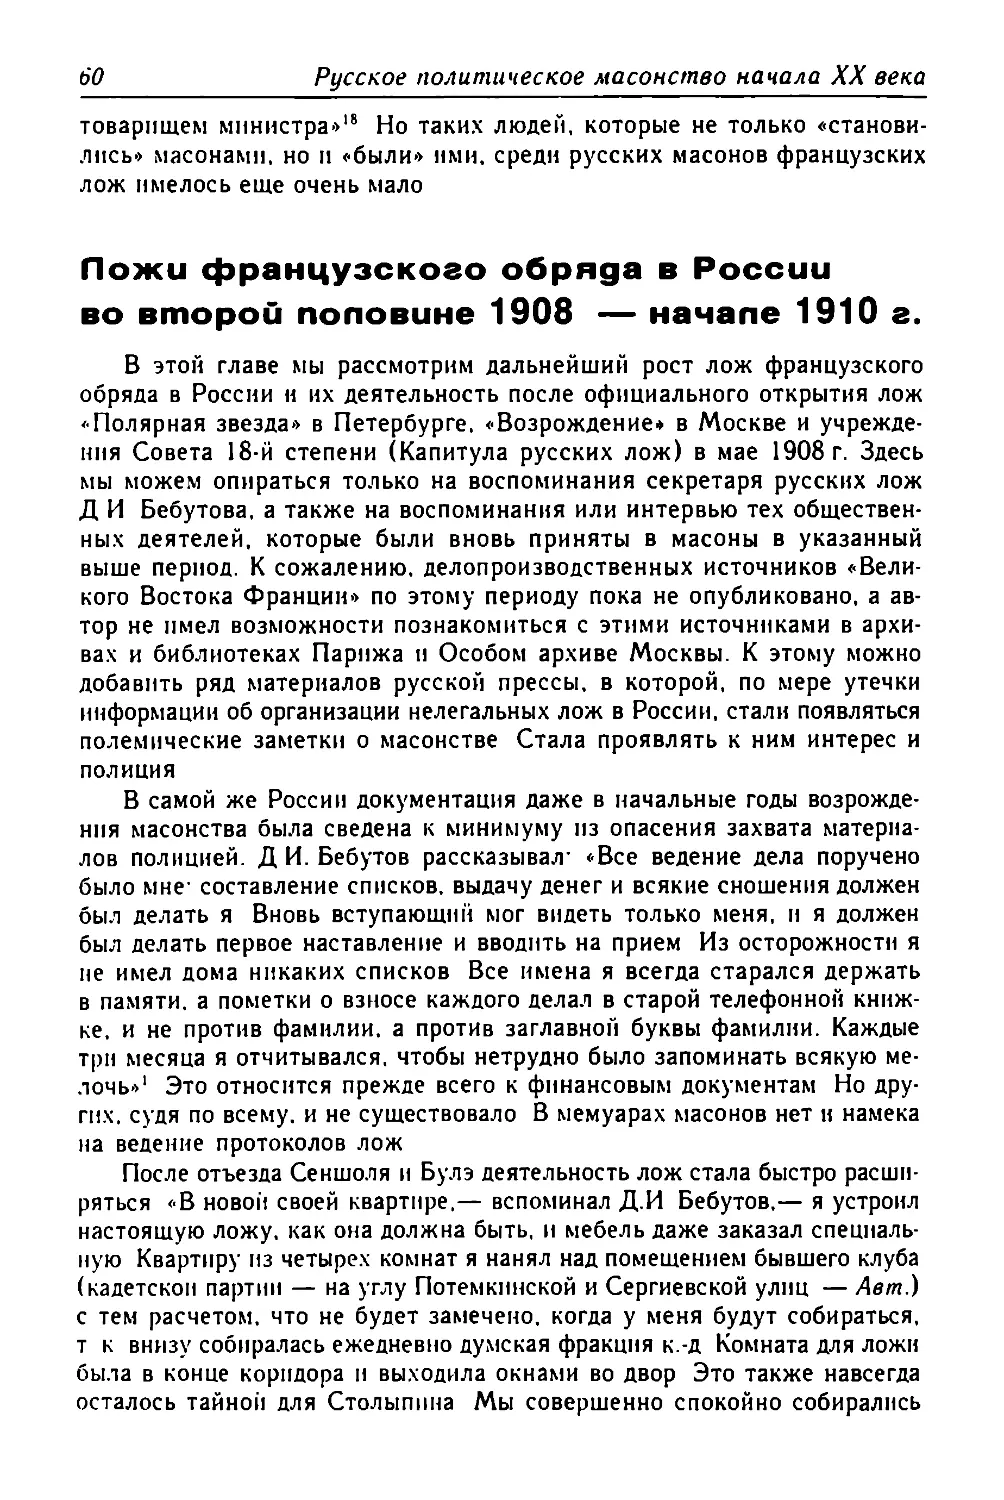 Ложи французского обряда в России во второй половине 1908 — начале 1910 г.